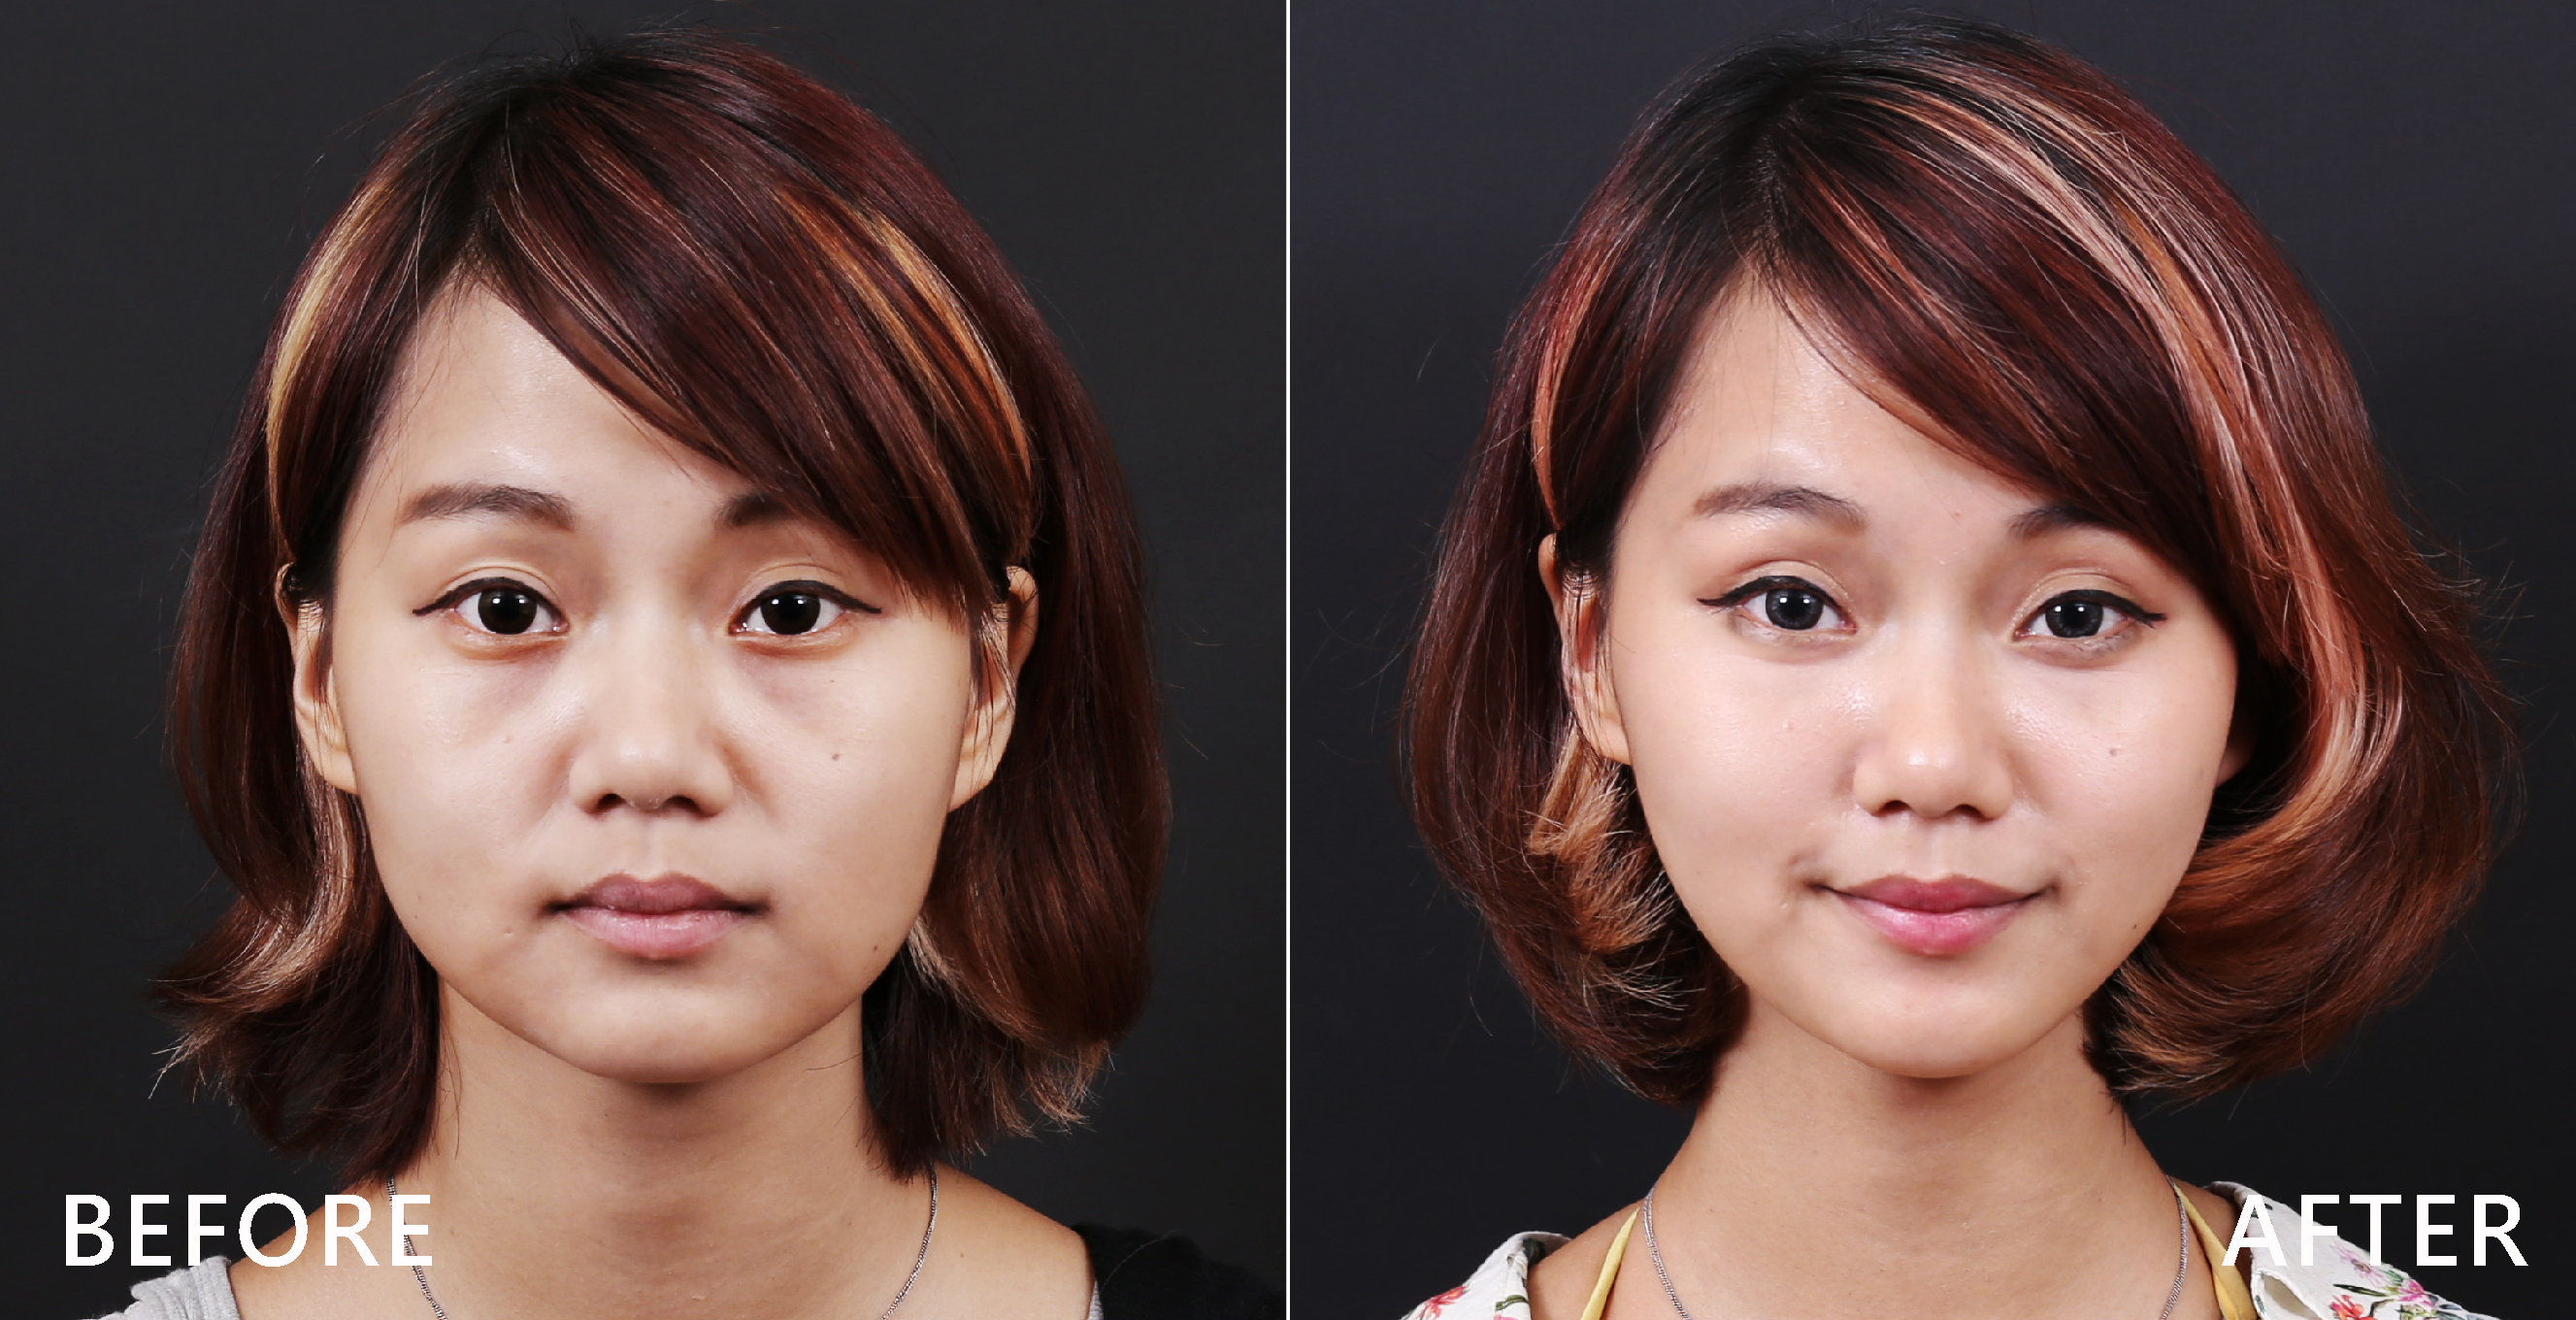 施打完除皺瘦臉針後讓臉部線條更立體。(本療程施打效果因人而異)